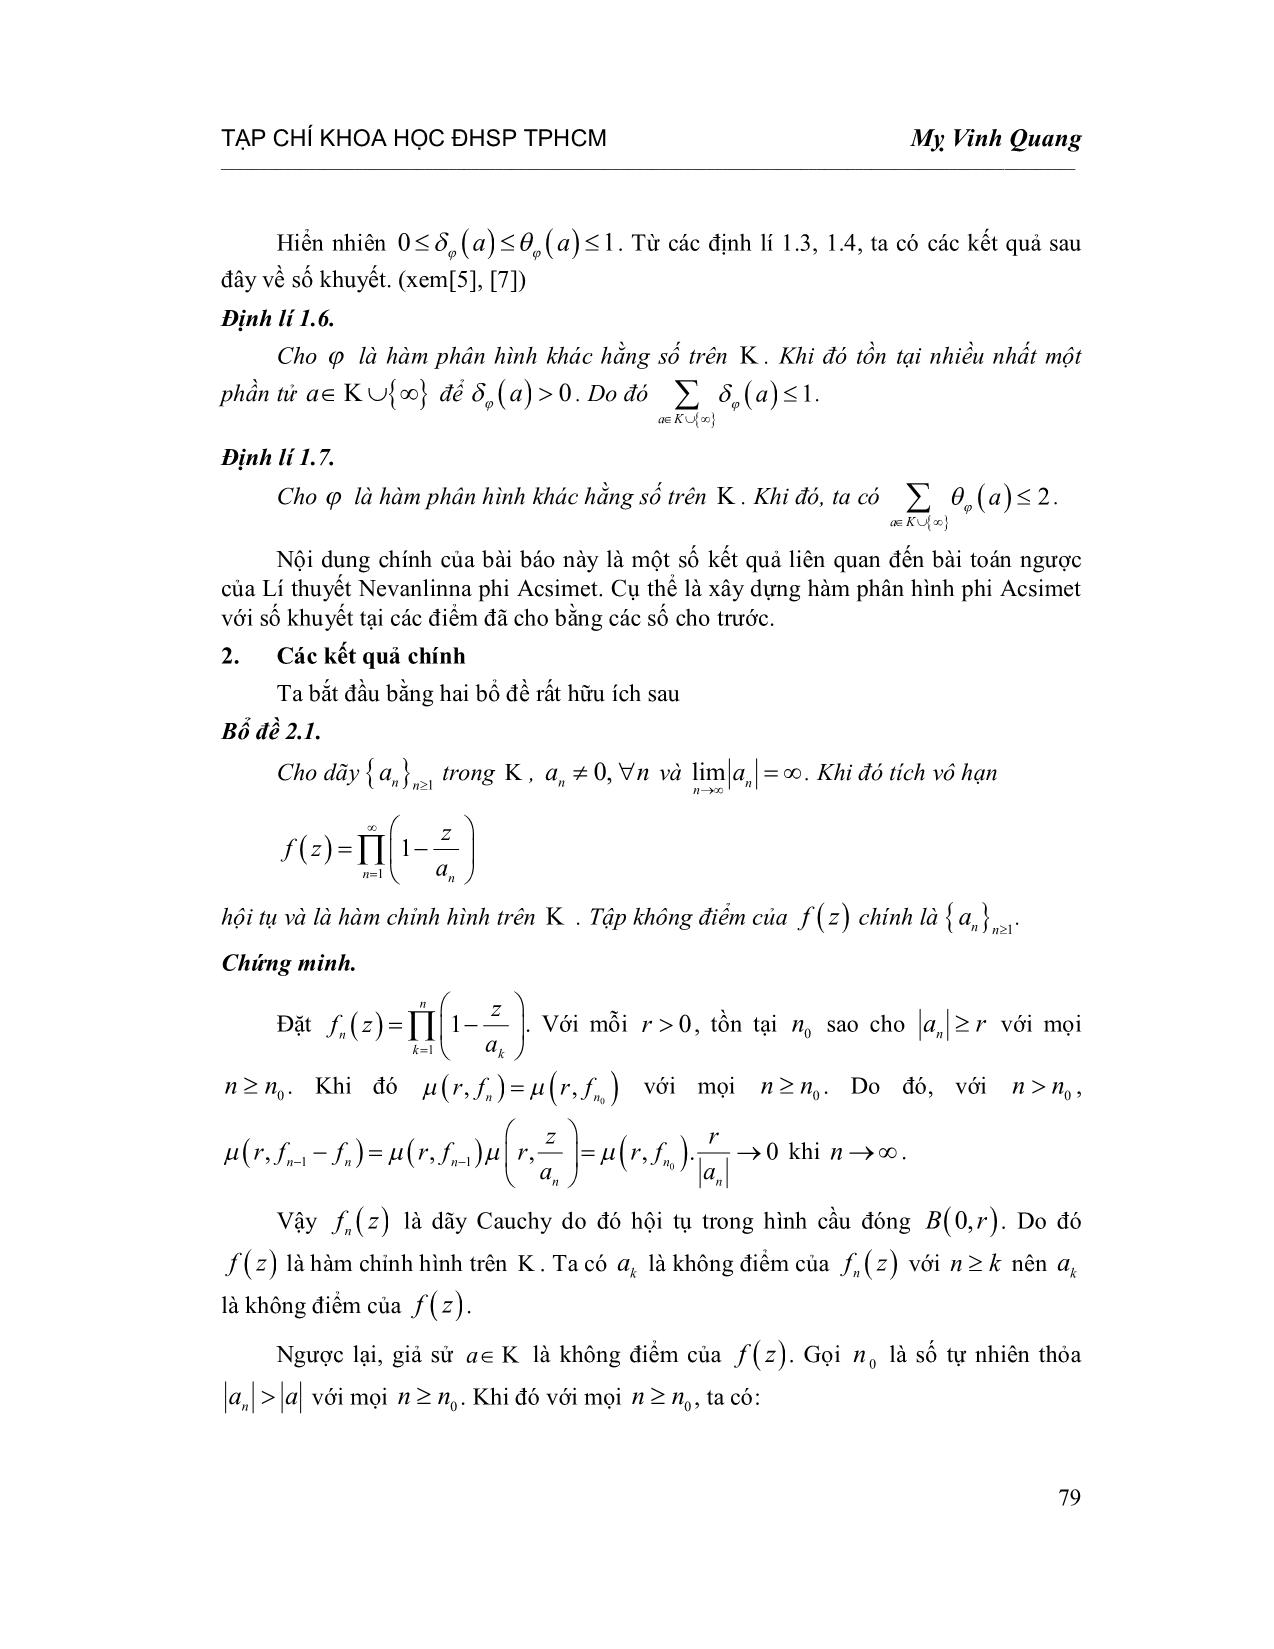 Số khuyết của hàm phân hình phi Acsimet trang 4